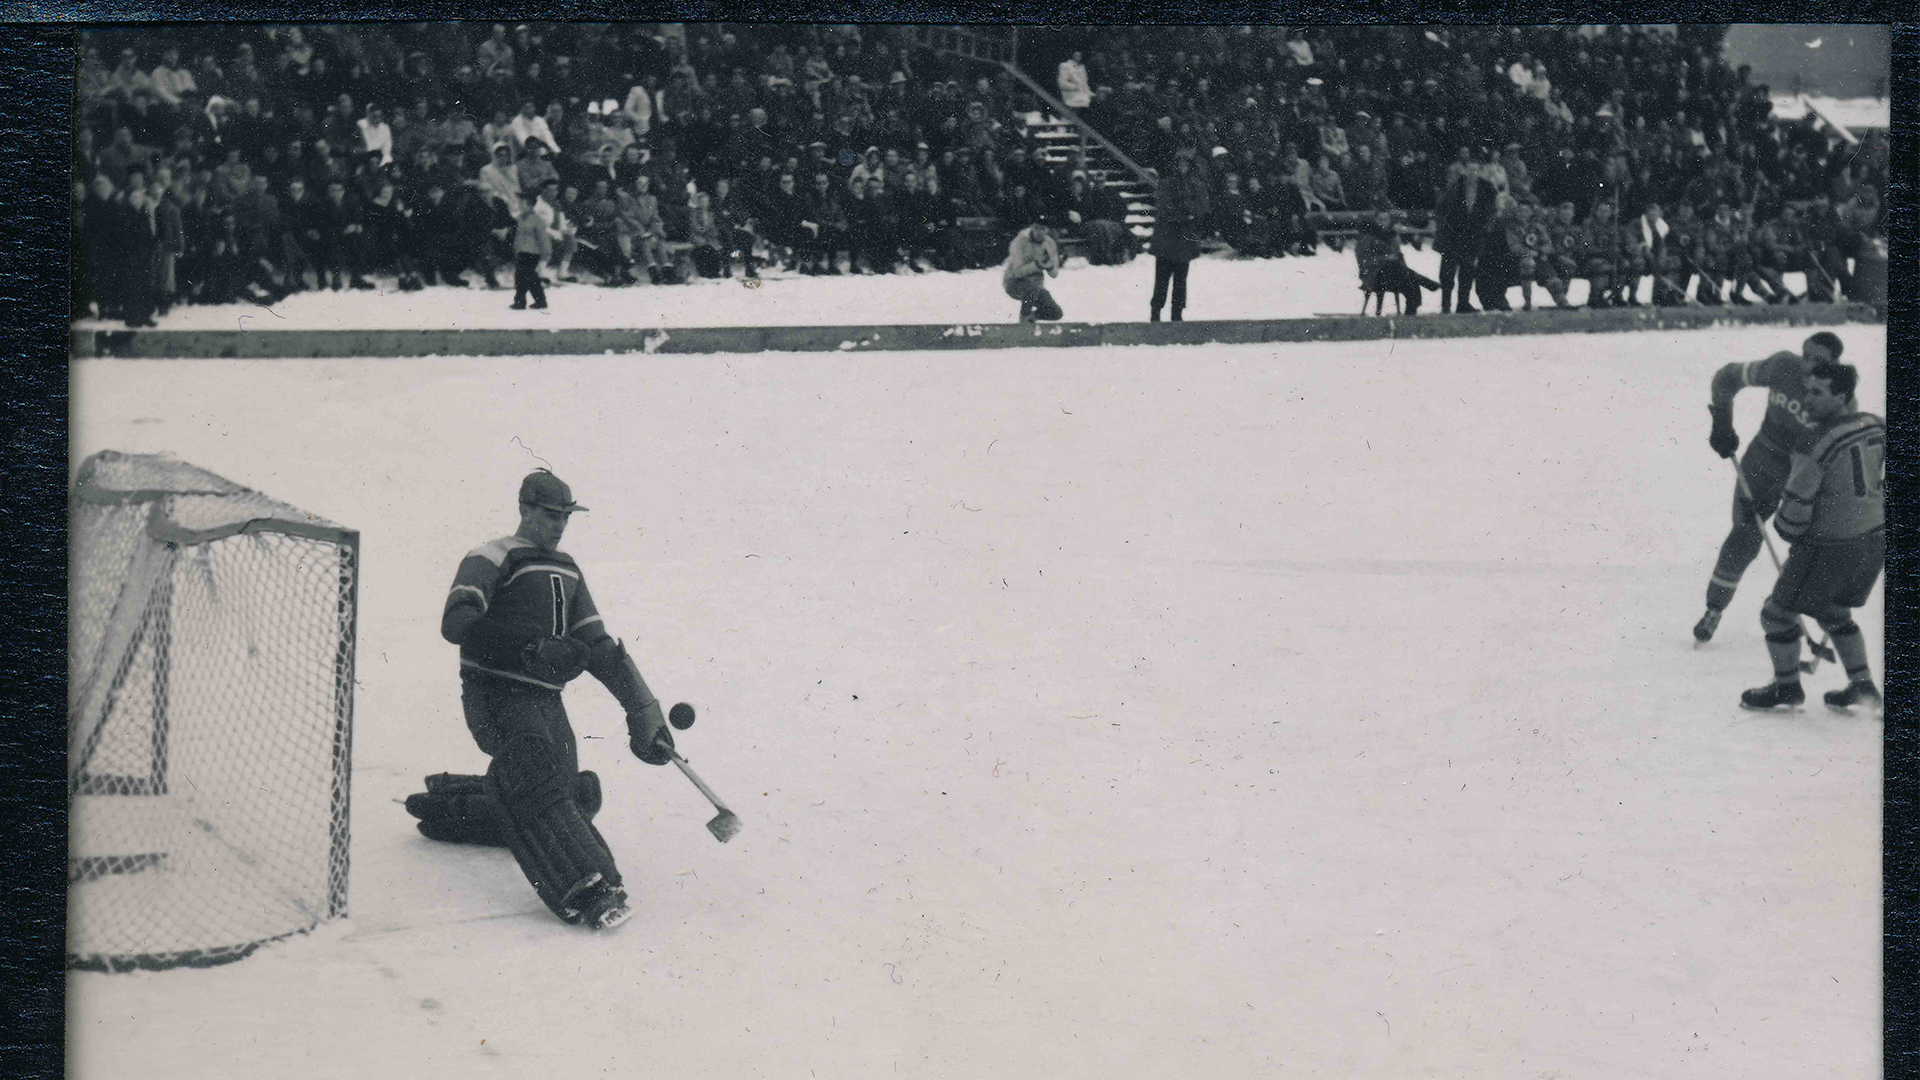 Murray Dowey at 1948 Olympics